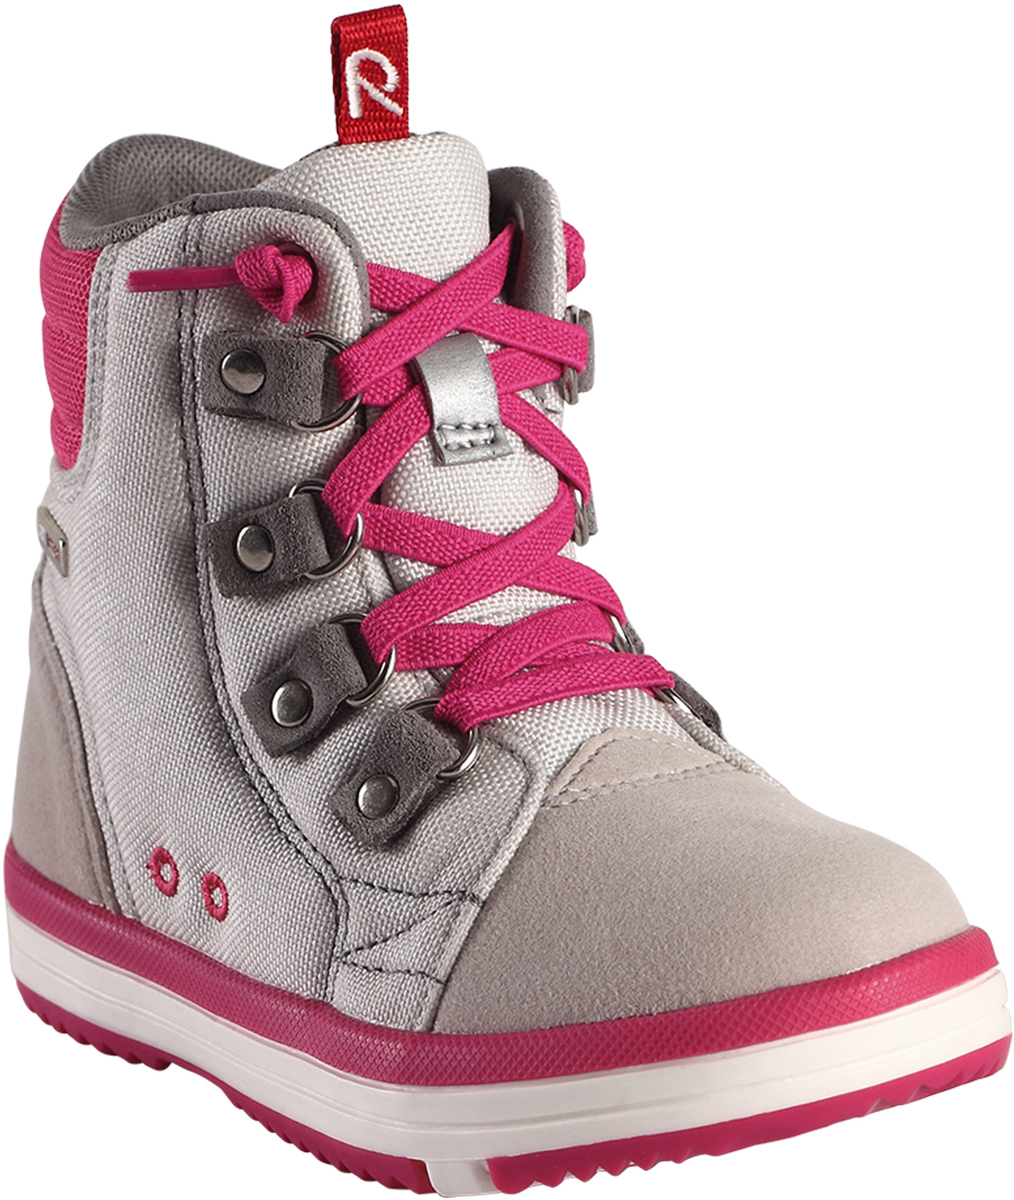 Ботинки детские Reima, цвет: розовый, серый. 5693439140. Размер 24